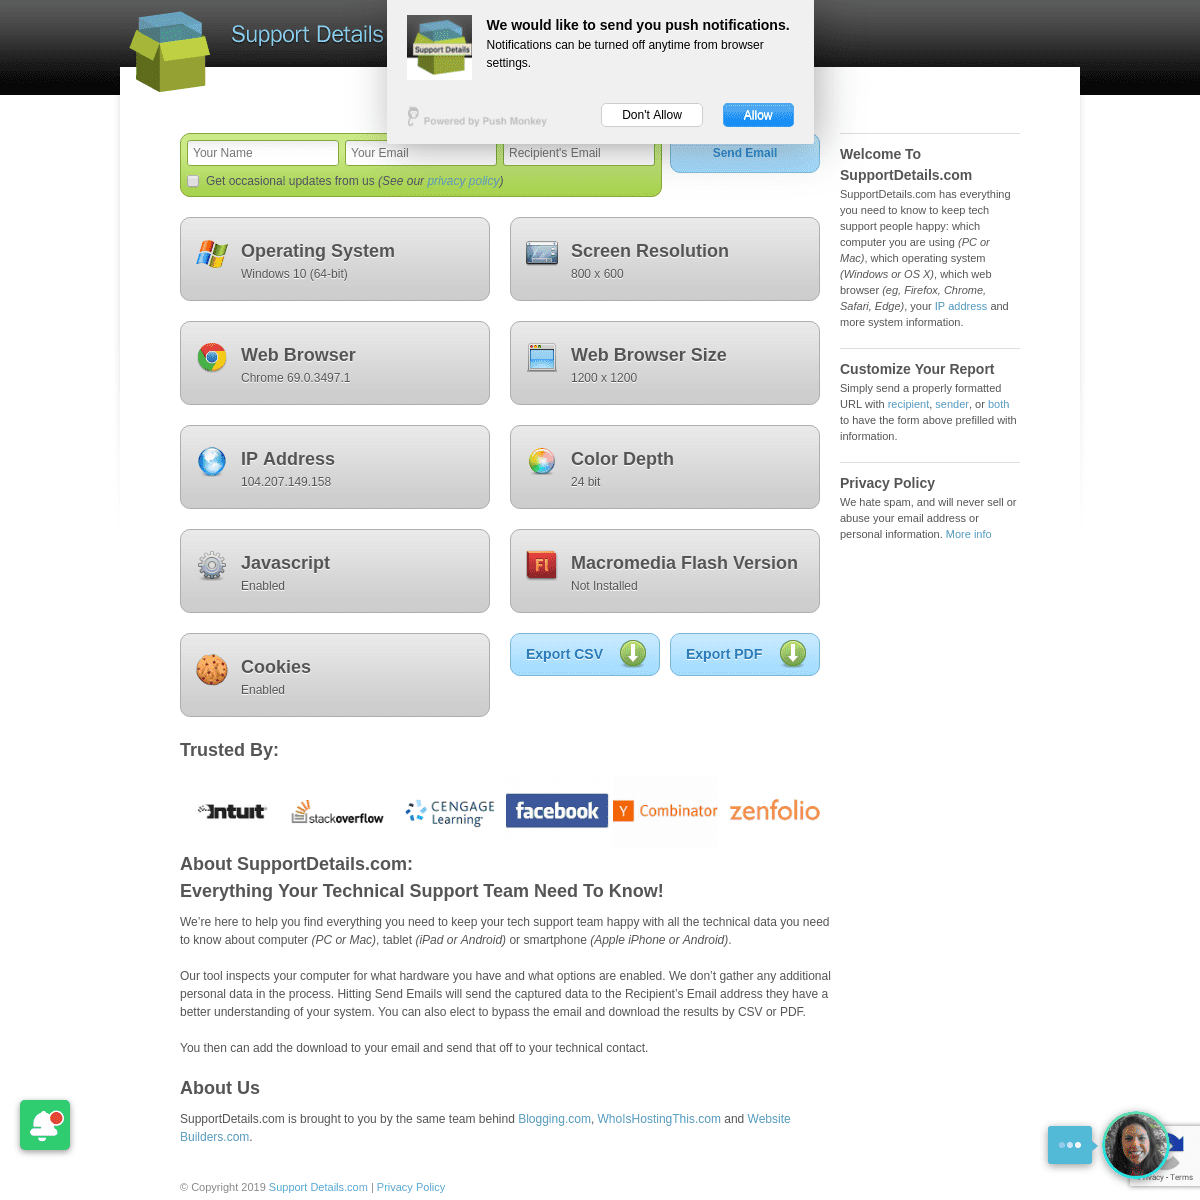 Support Details.com [Get Your Browser Version, System Information & More]